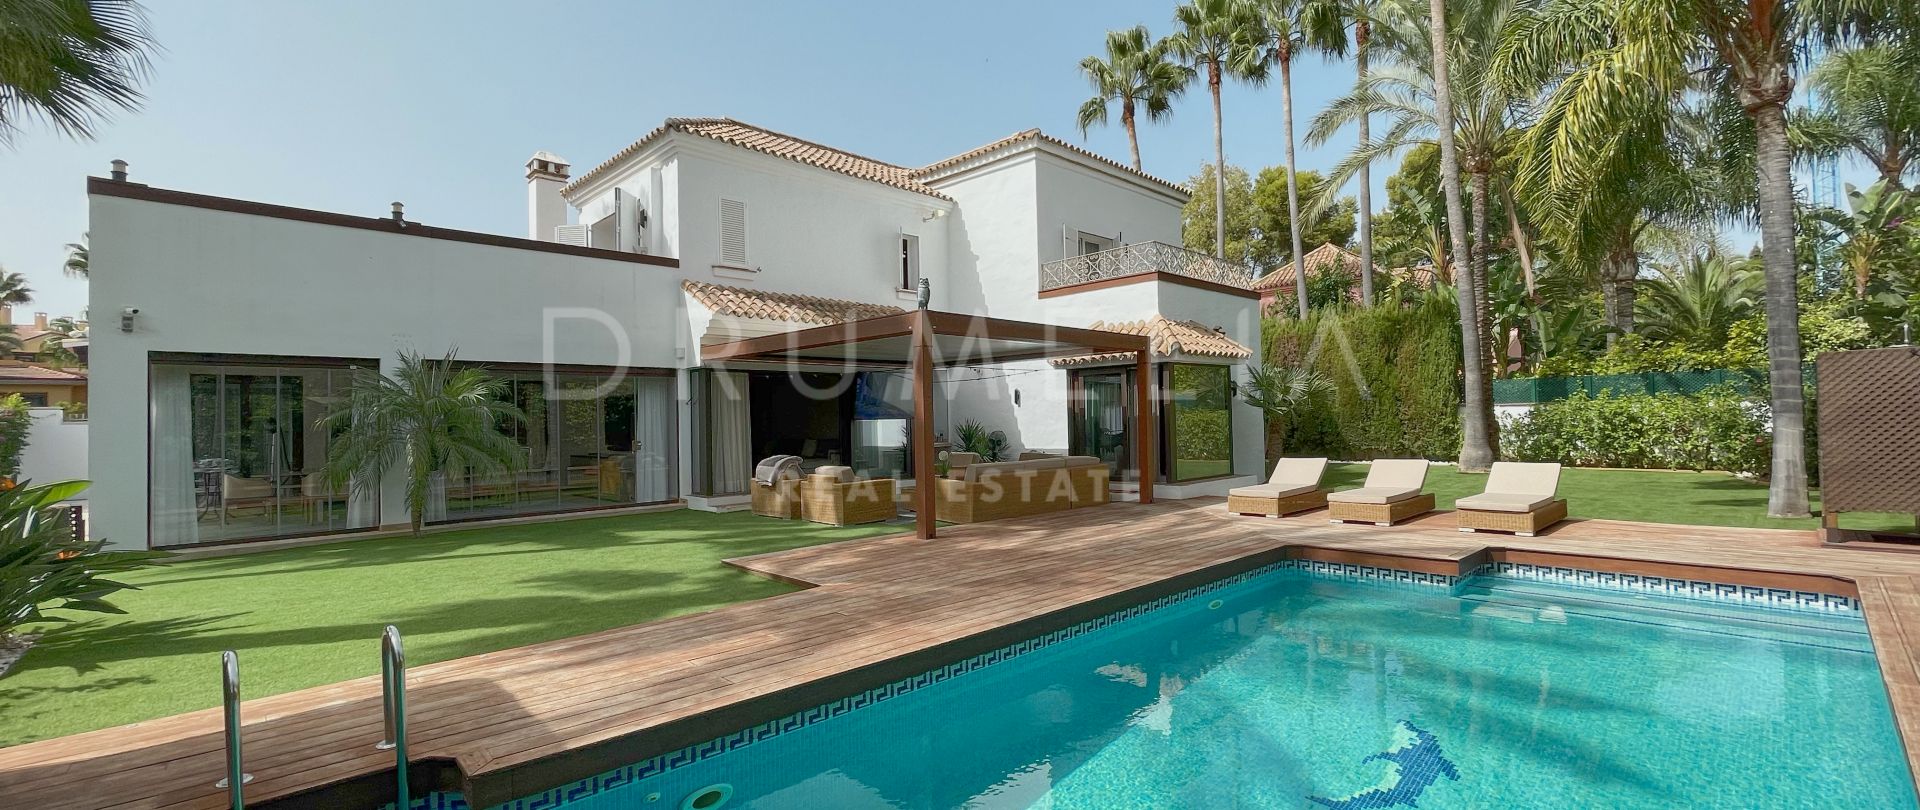 Villa for salg i Las Mimosas, Marbella - Puerto Banus